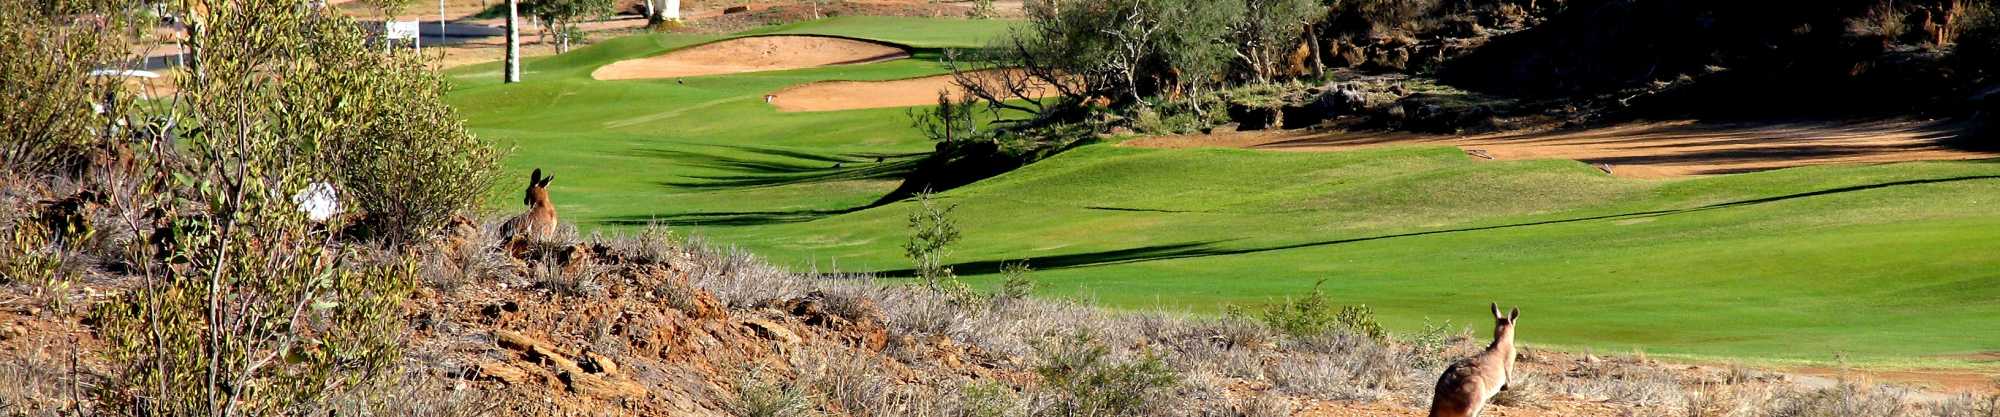 Alice Springs Golf Club 8th hole